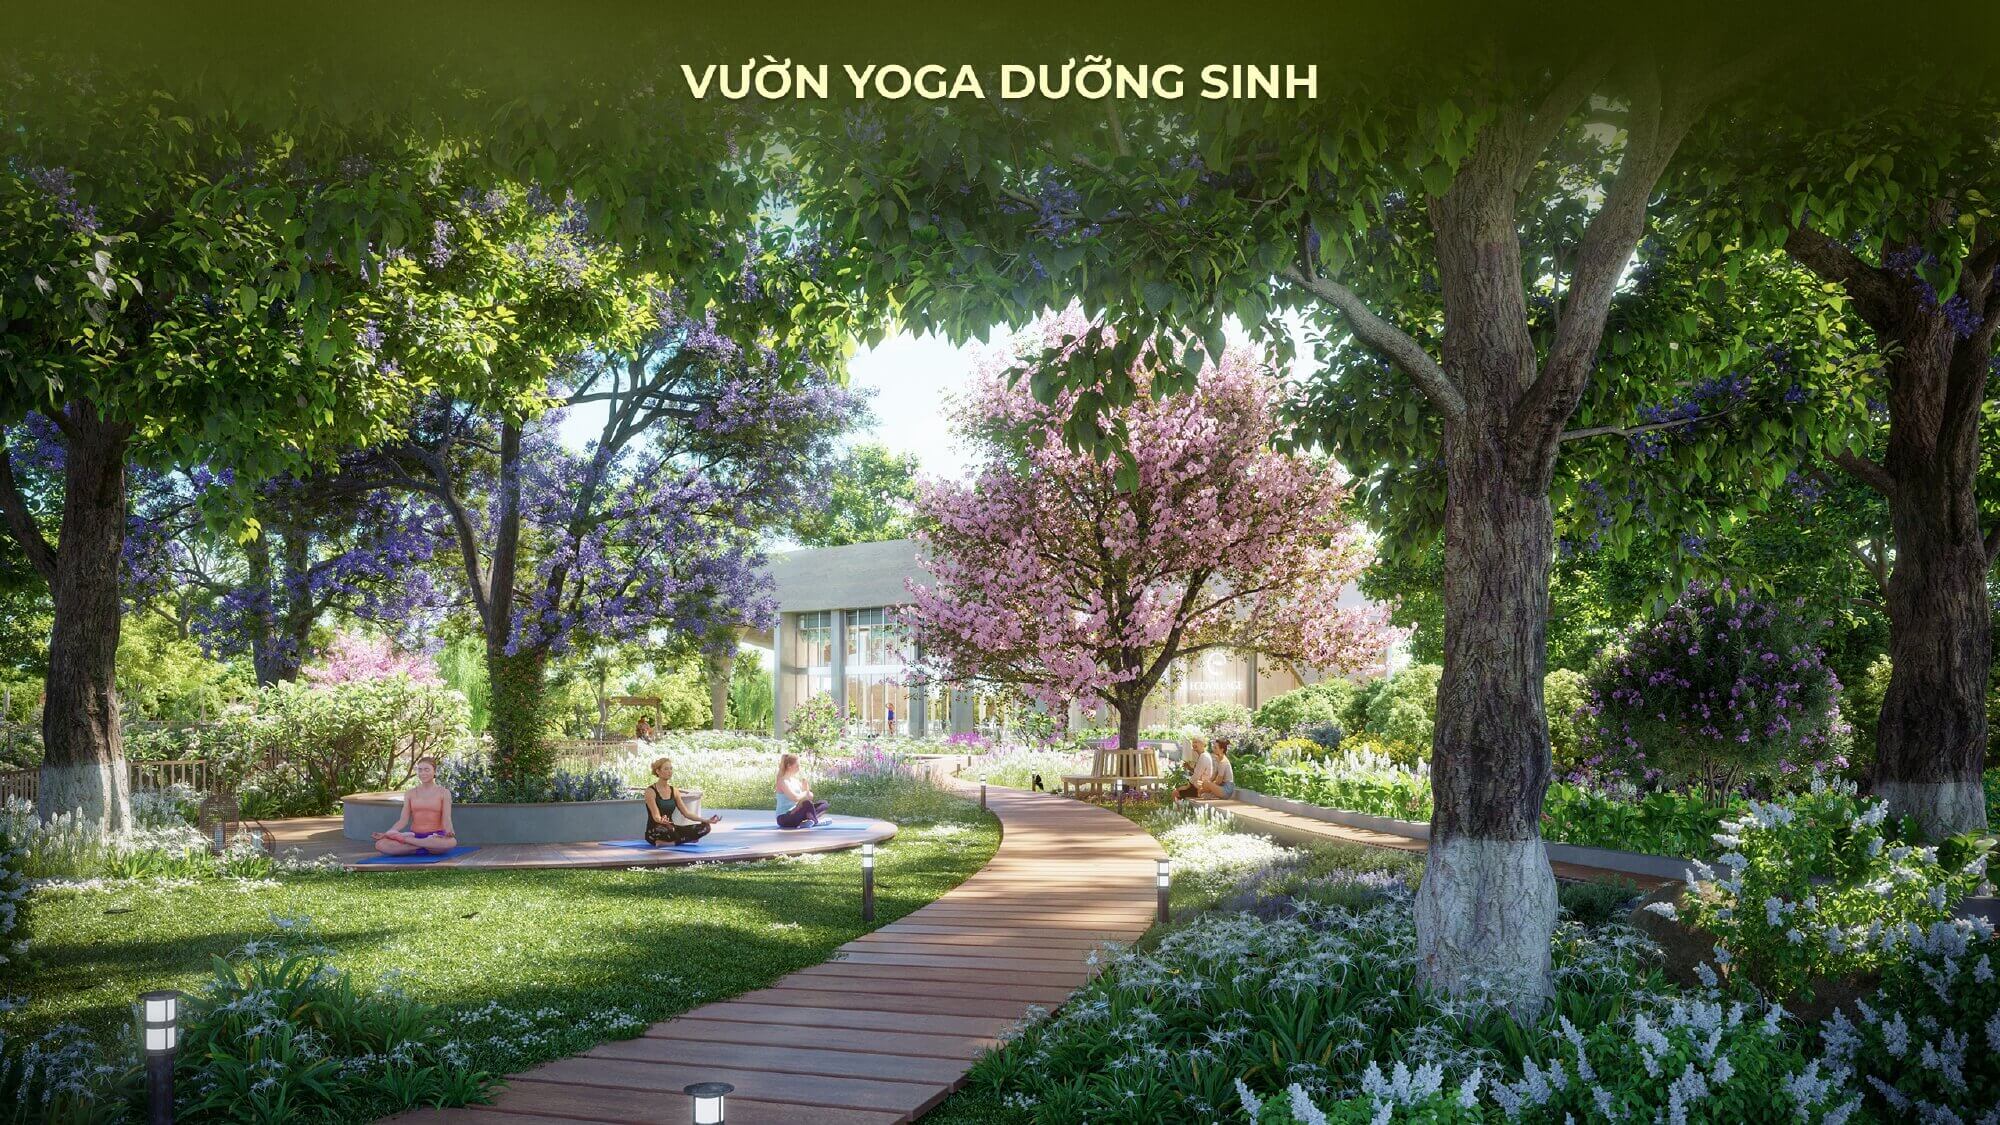 Vườn yoga dưỡng sinh